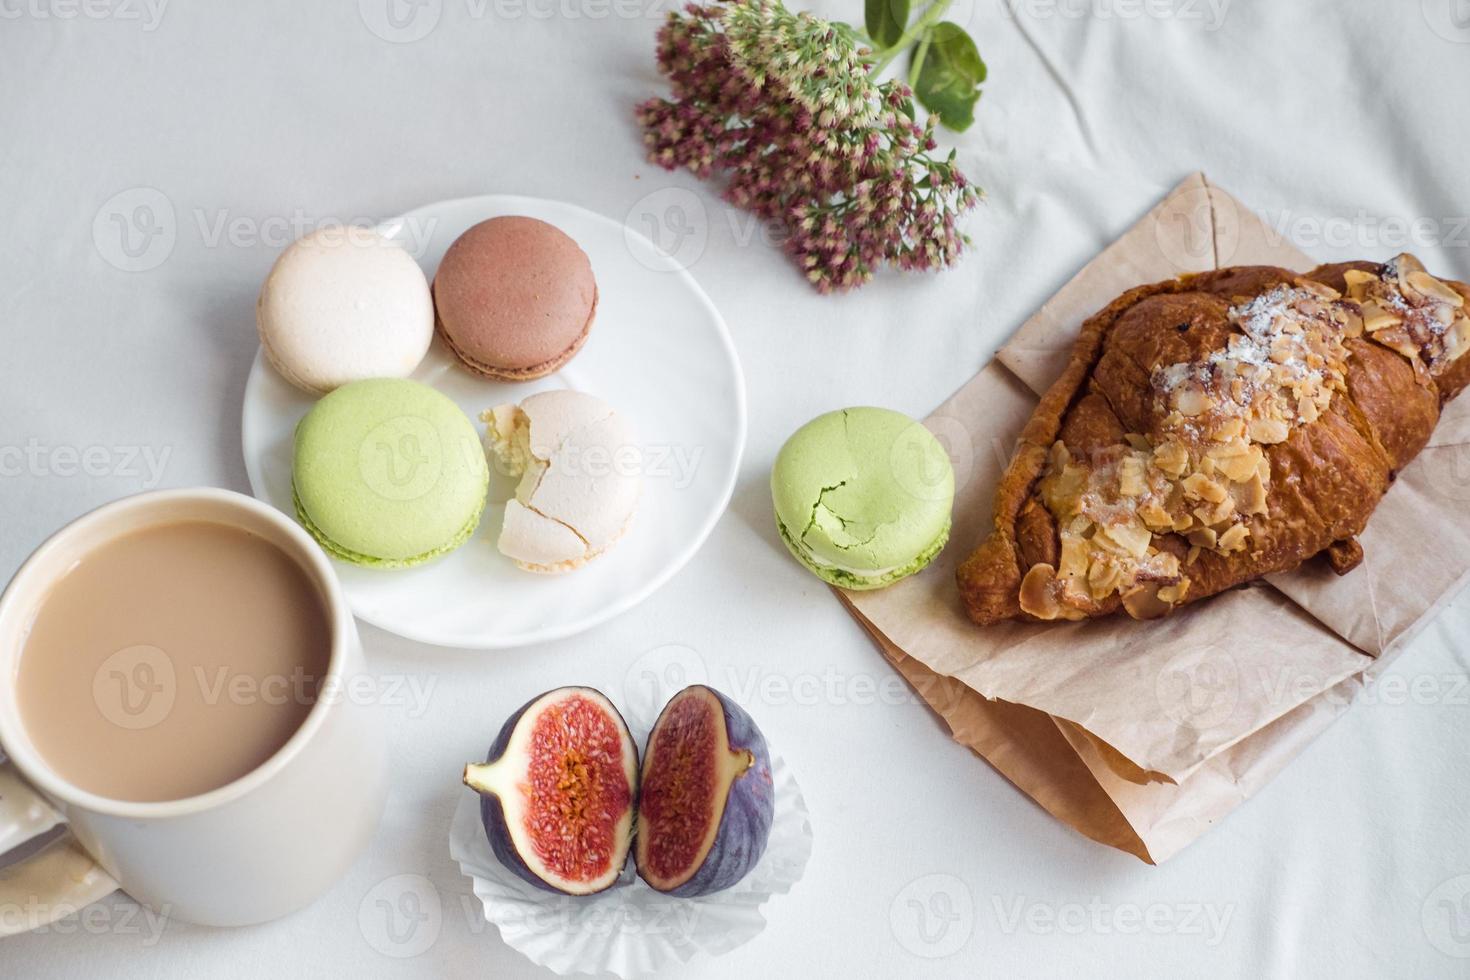 ästhetik einer tasse kaffee, feigen, eines großen croissants und macarons auf weißem hintergrund, draufsicht foto